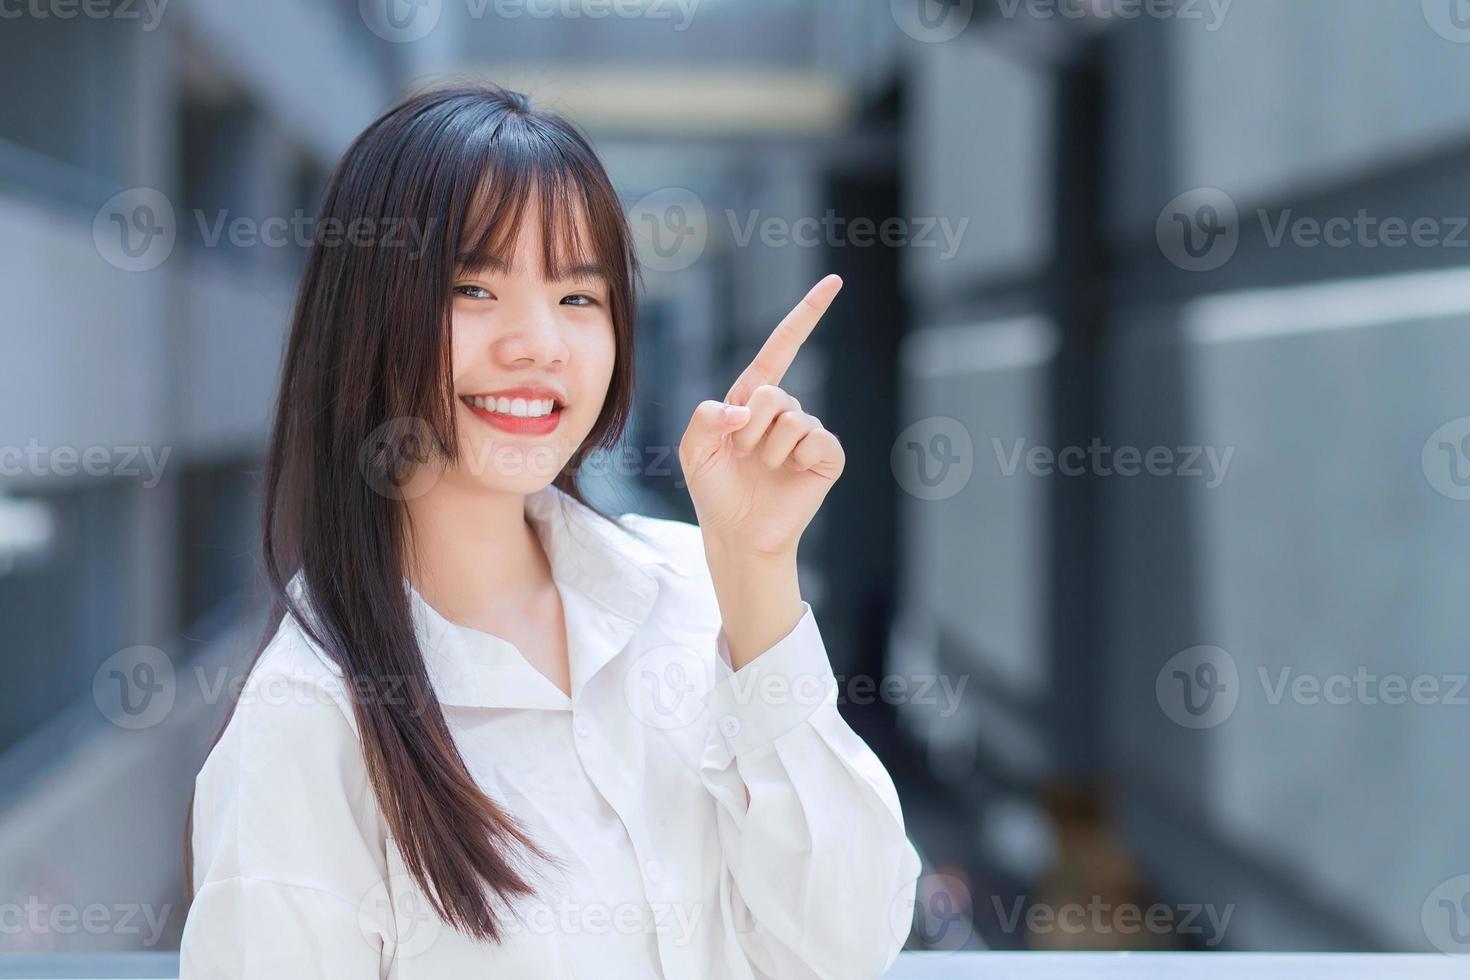 una joven trabajadora asiática profesional que usa camisa blanca está señalando con la mano para presentar algo mientras está al aire libre en la ciudad con un edificio de oficinas en el fondo. foto